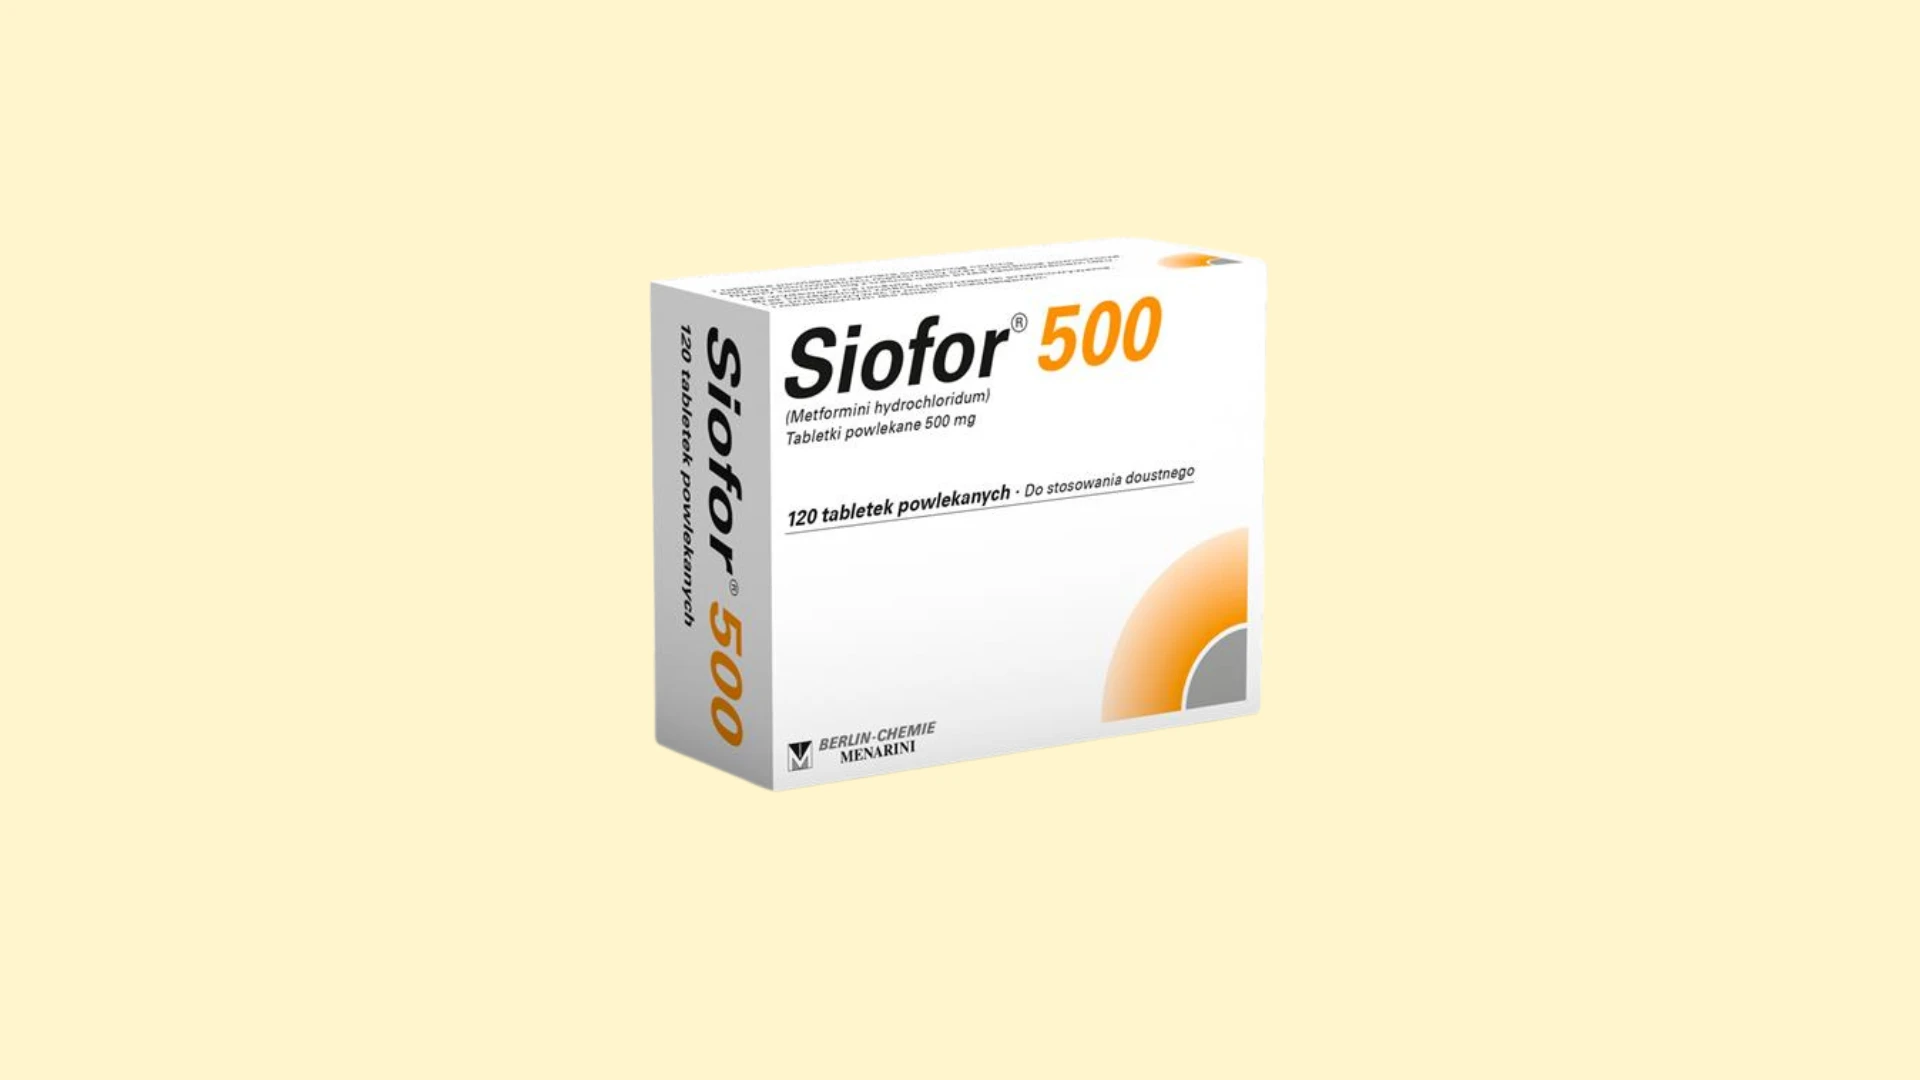 Siofor 500 - Recepta online - e-Recepta z konsultacją | cena, dawkowanie, przeciwwskazania